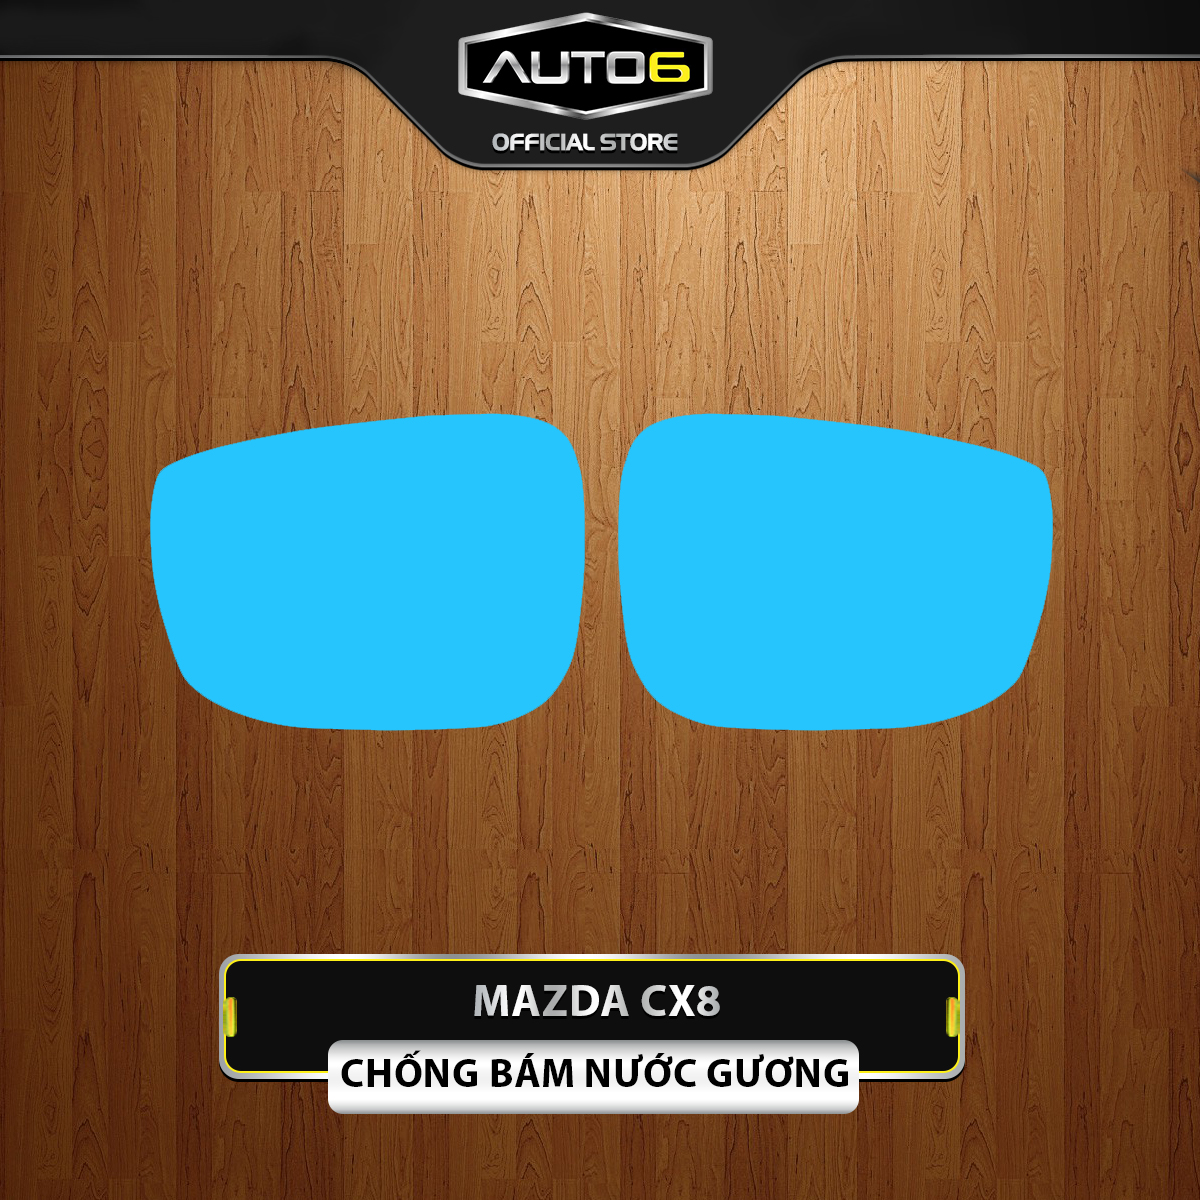 MAZDA CX8 - Tấm dán chống bám nước gương ô tô - AUTO6